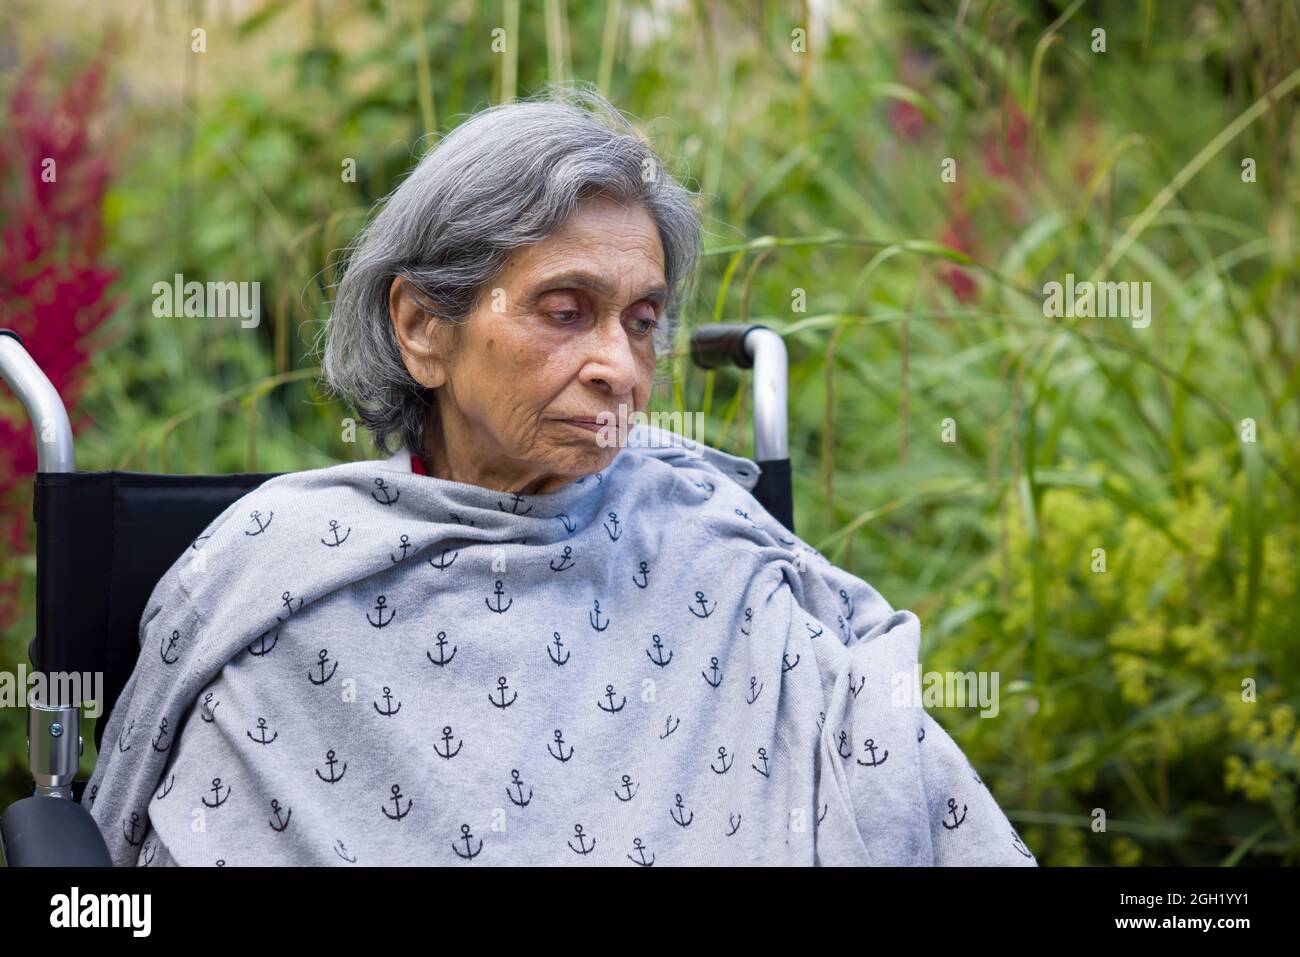 Alte Inderin, die in einem Rollstuhl in einem britischen Garten sitzt und traurig oder deprimiert aussieht. Zeigt die psychische Gesundheit älterer Menschen, Depressionen und Krankheiten im Alter Stockfoto